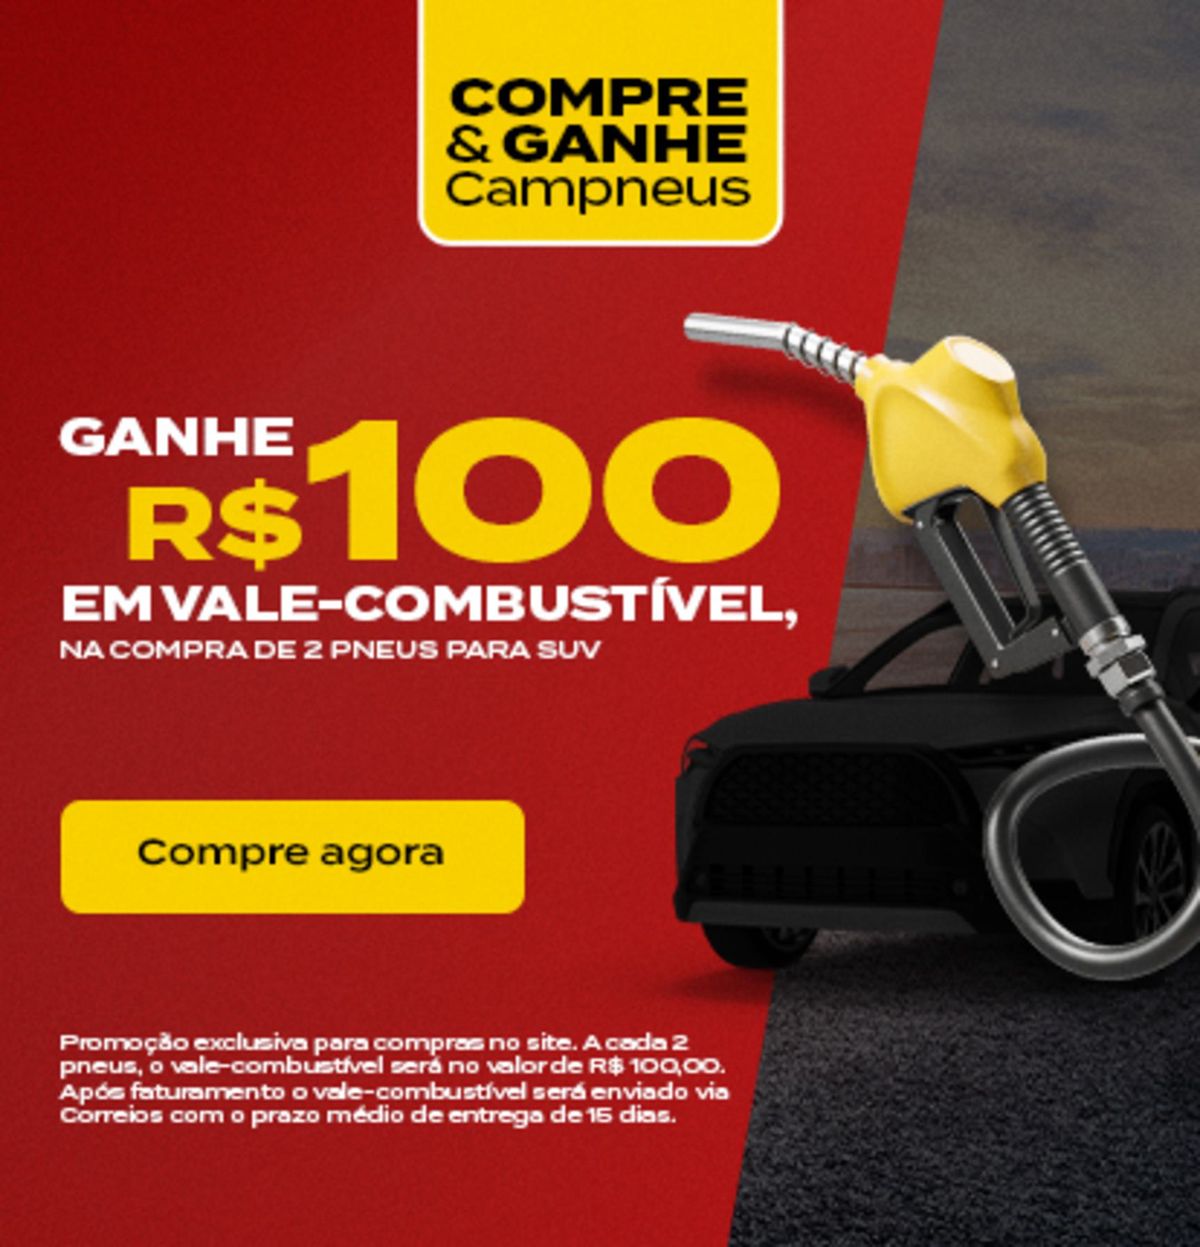 Compre pneus e ganhe vale-combustível de R$100,00